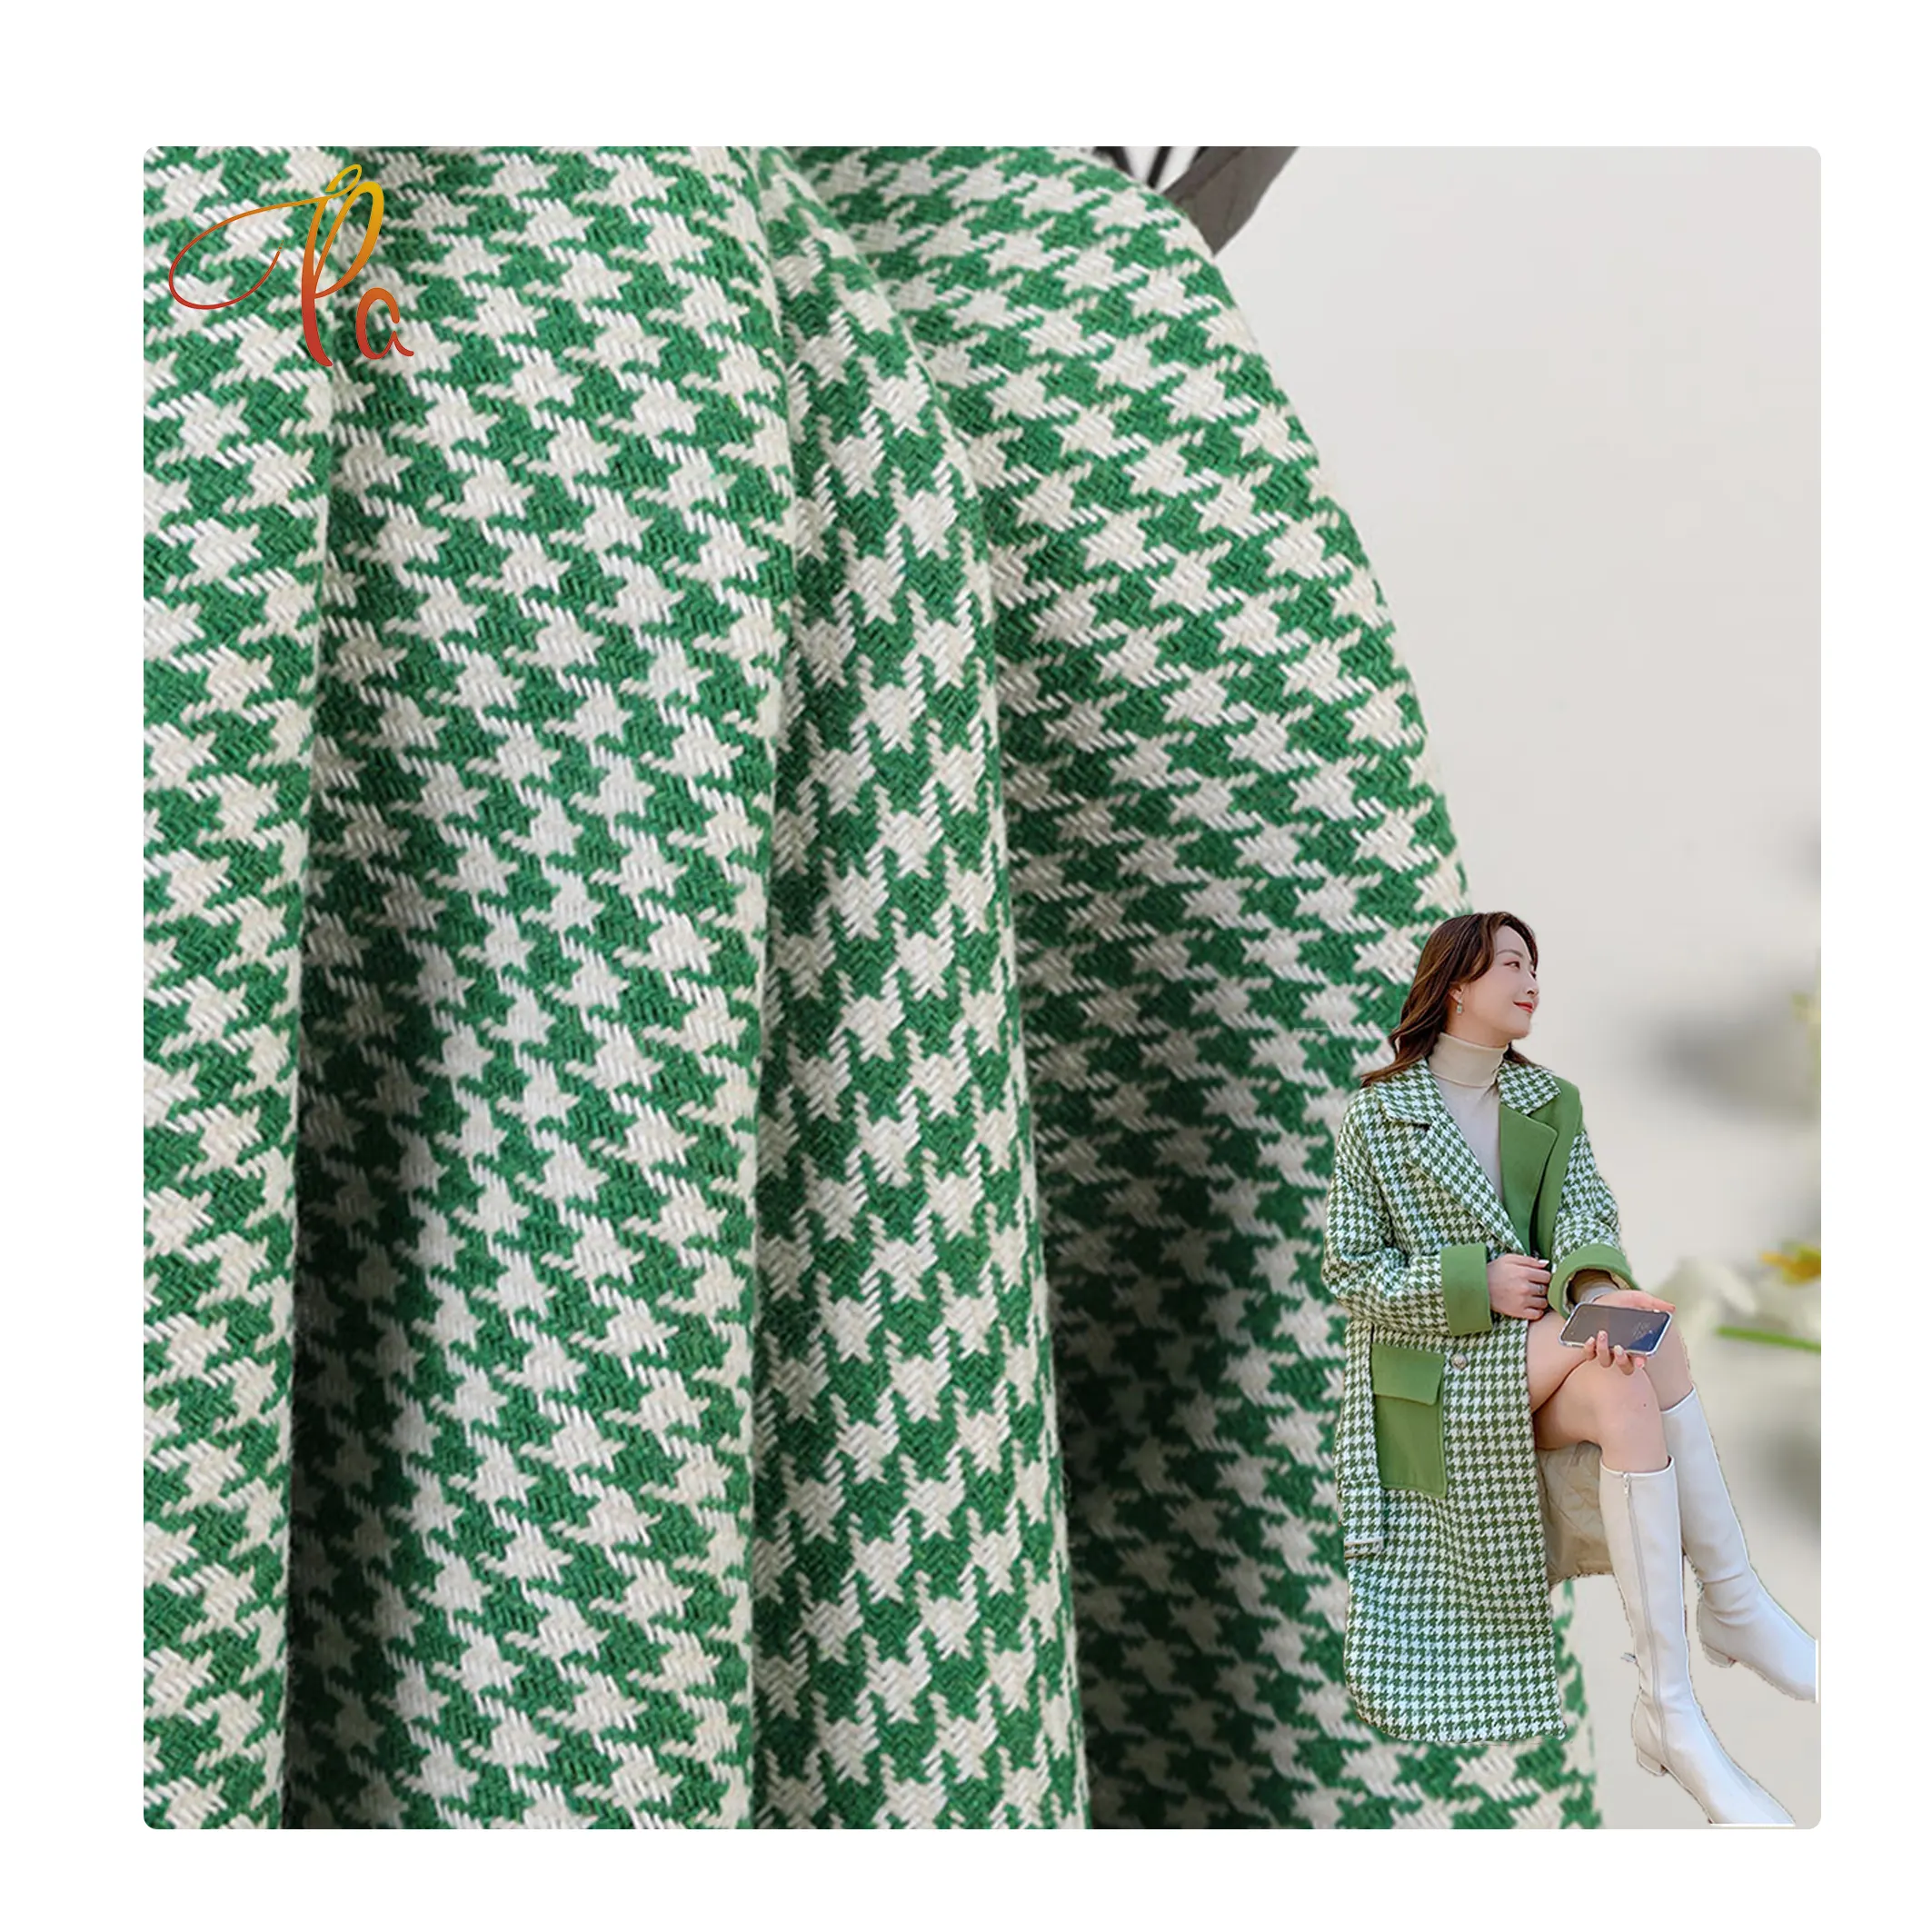 Hiçbir adedi düşük fiyat toptan stok tekstil kumaş Polyester kadın ceket dokuma tüvit kumaş